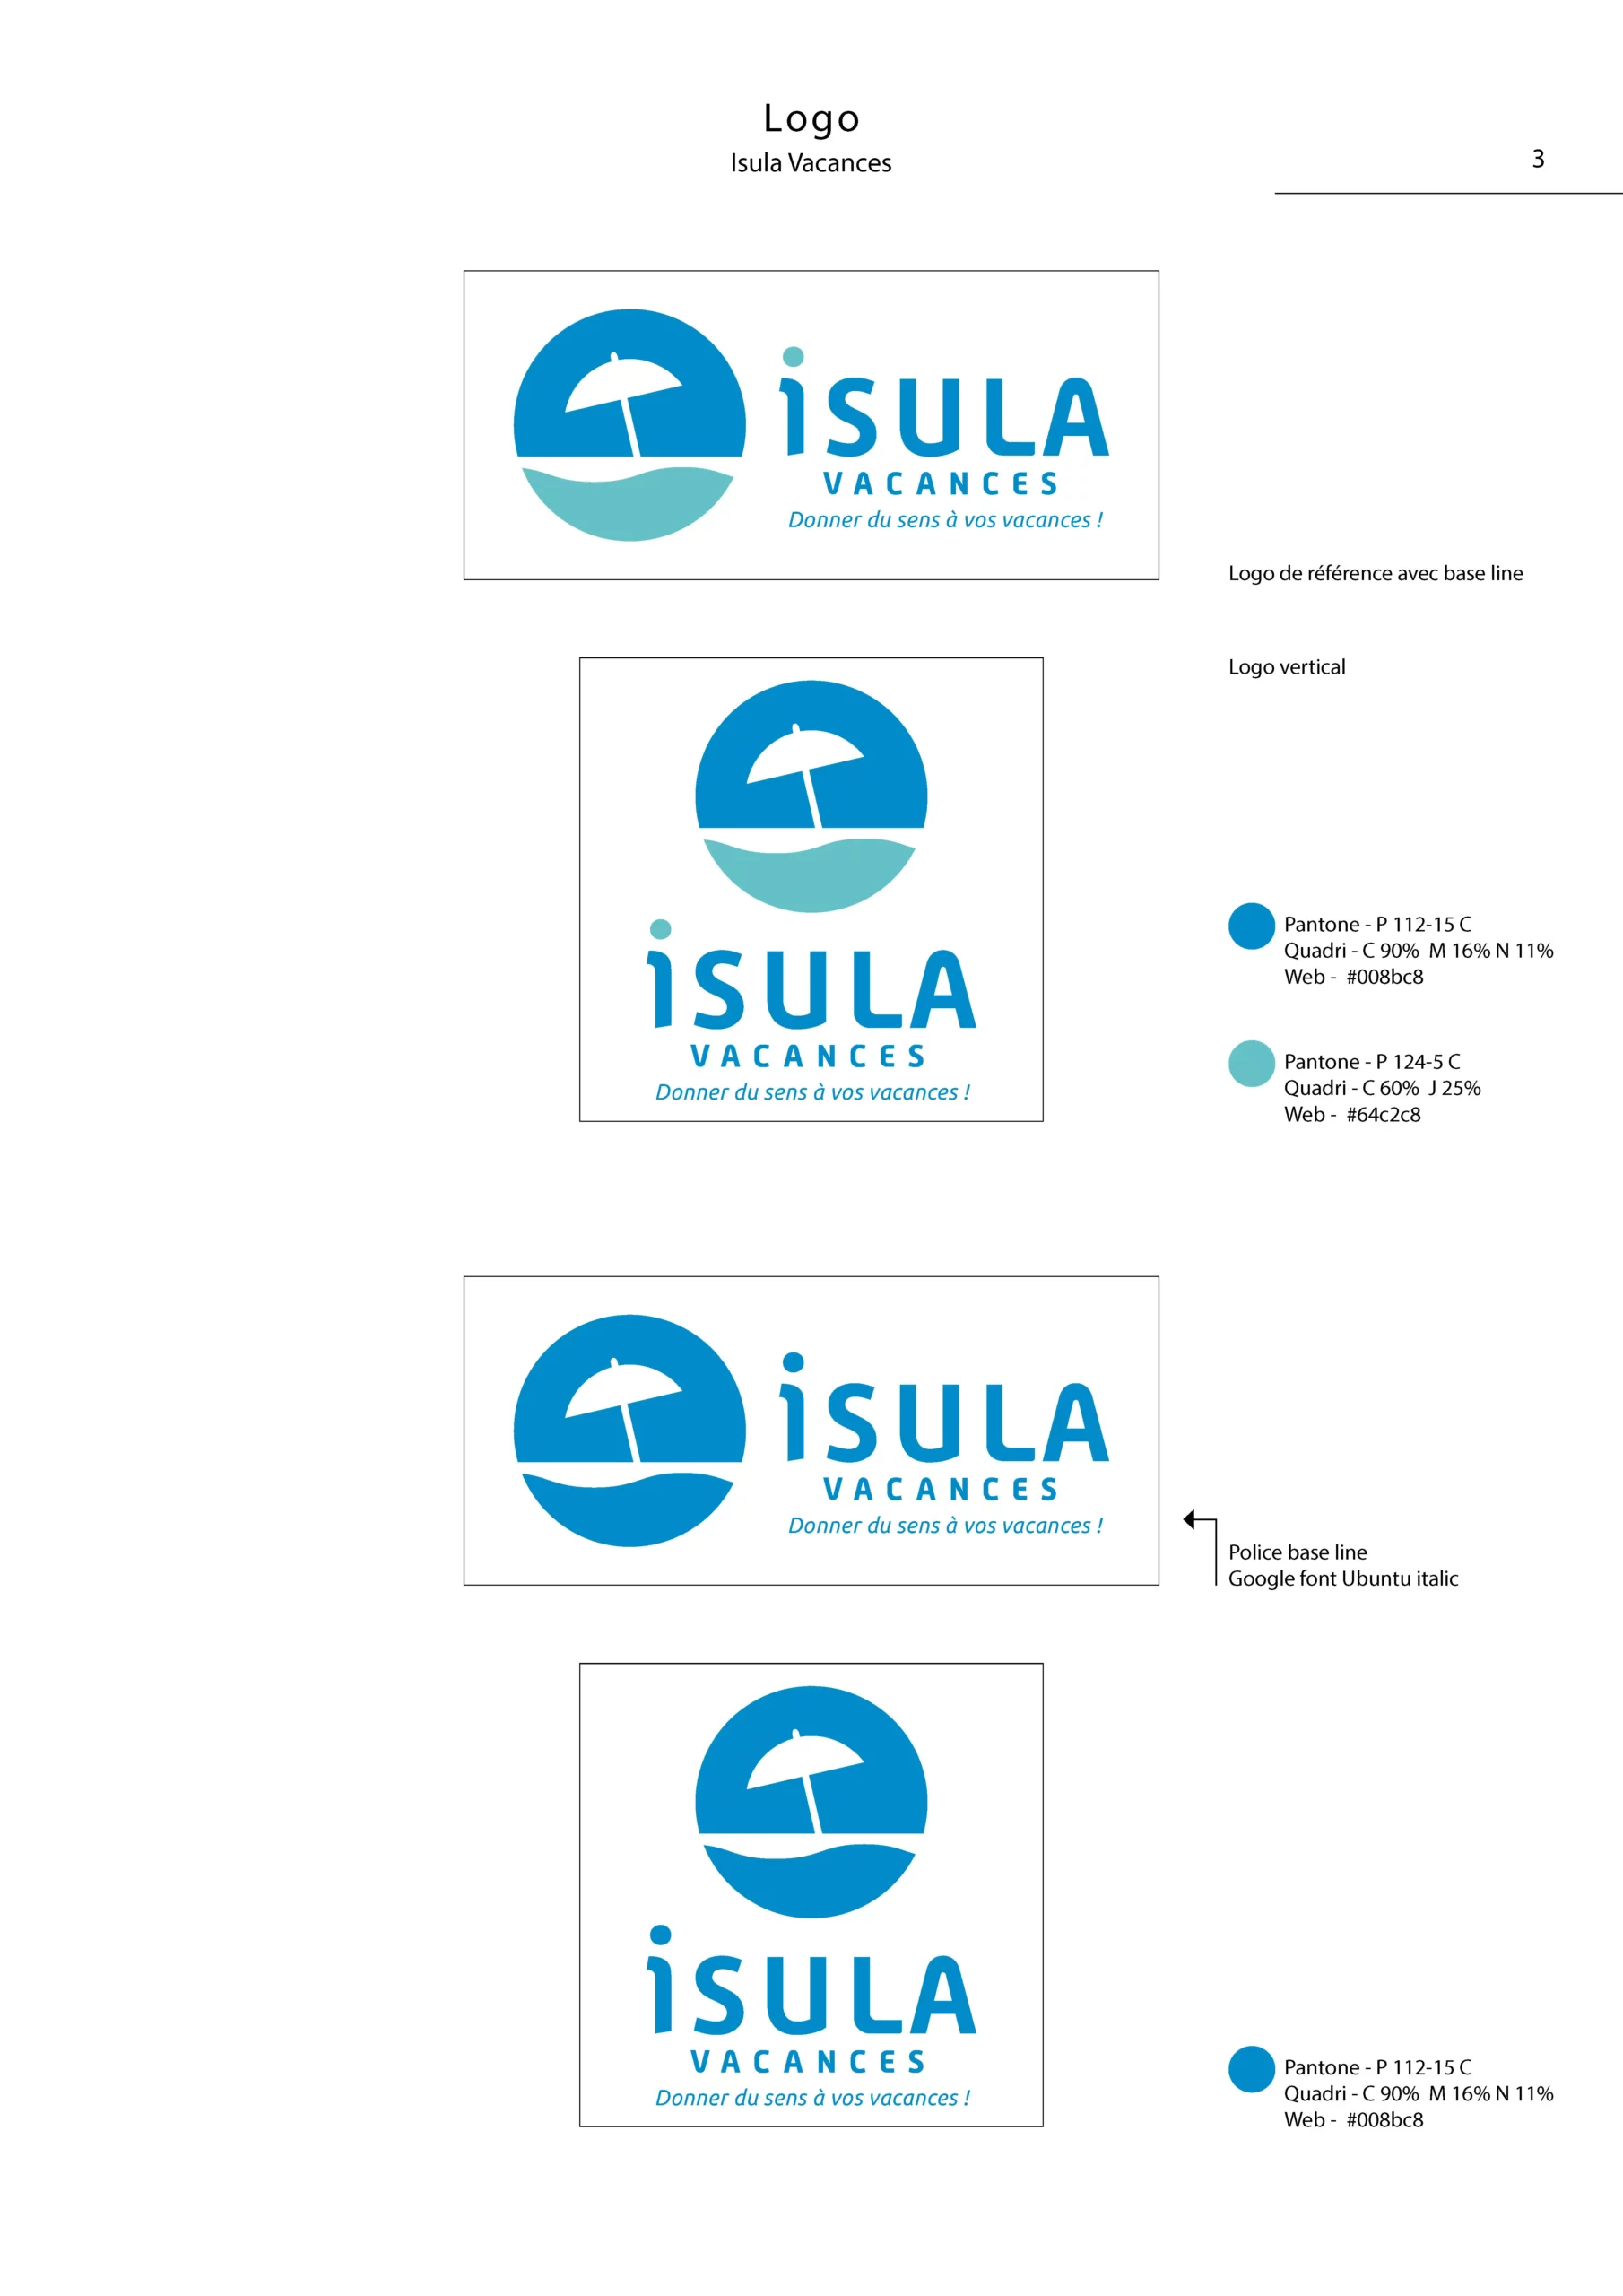 Charte graphique simplifiée du logo Isula Vacances Page 3